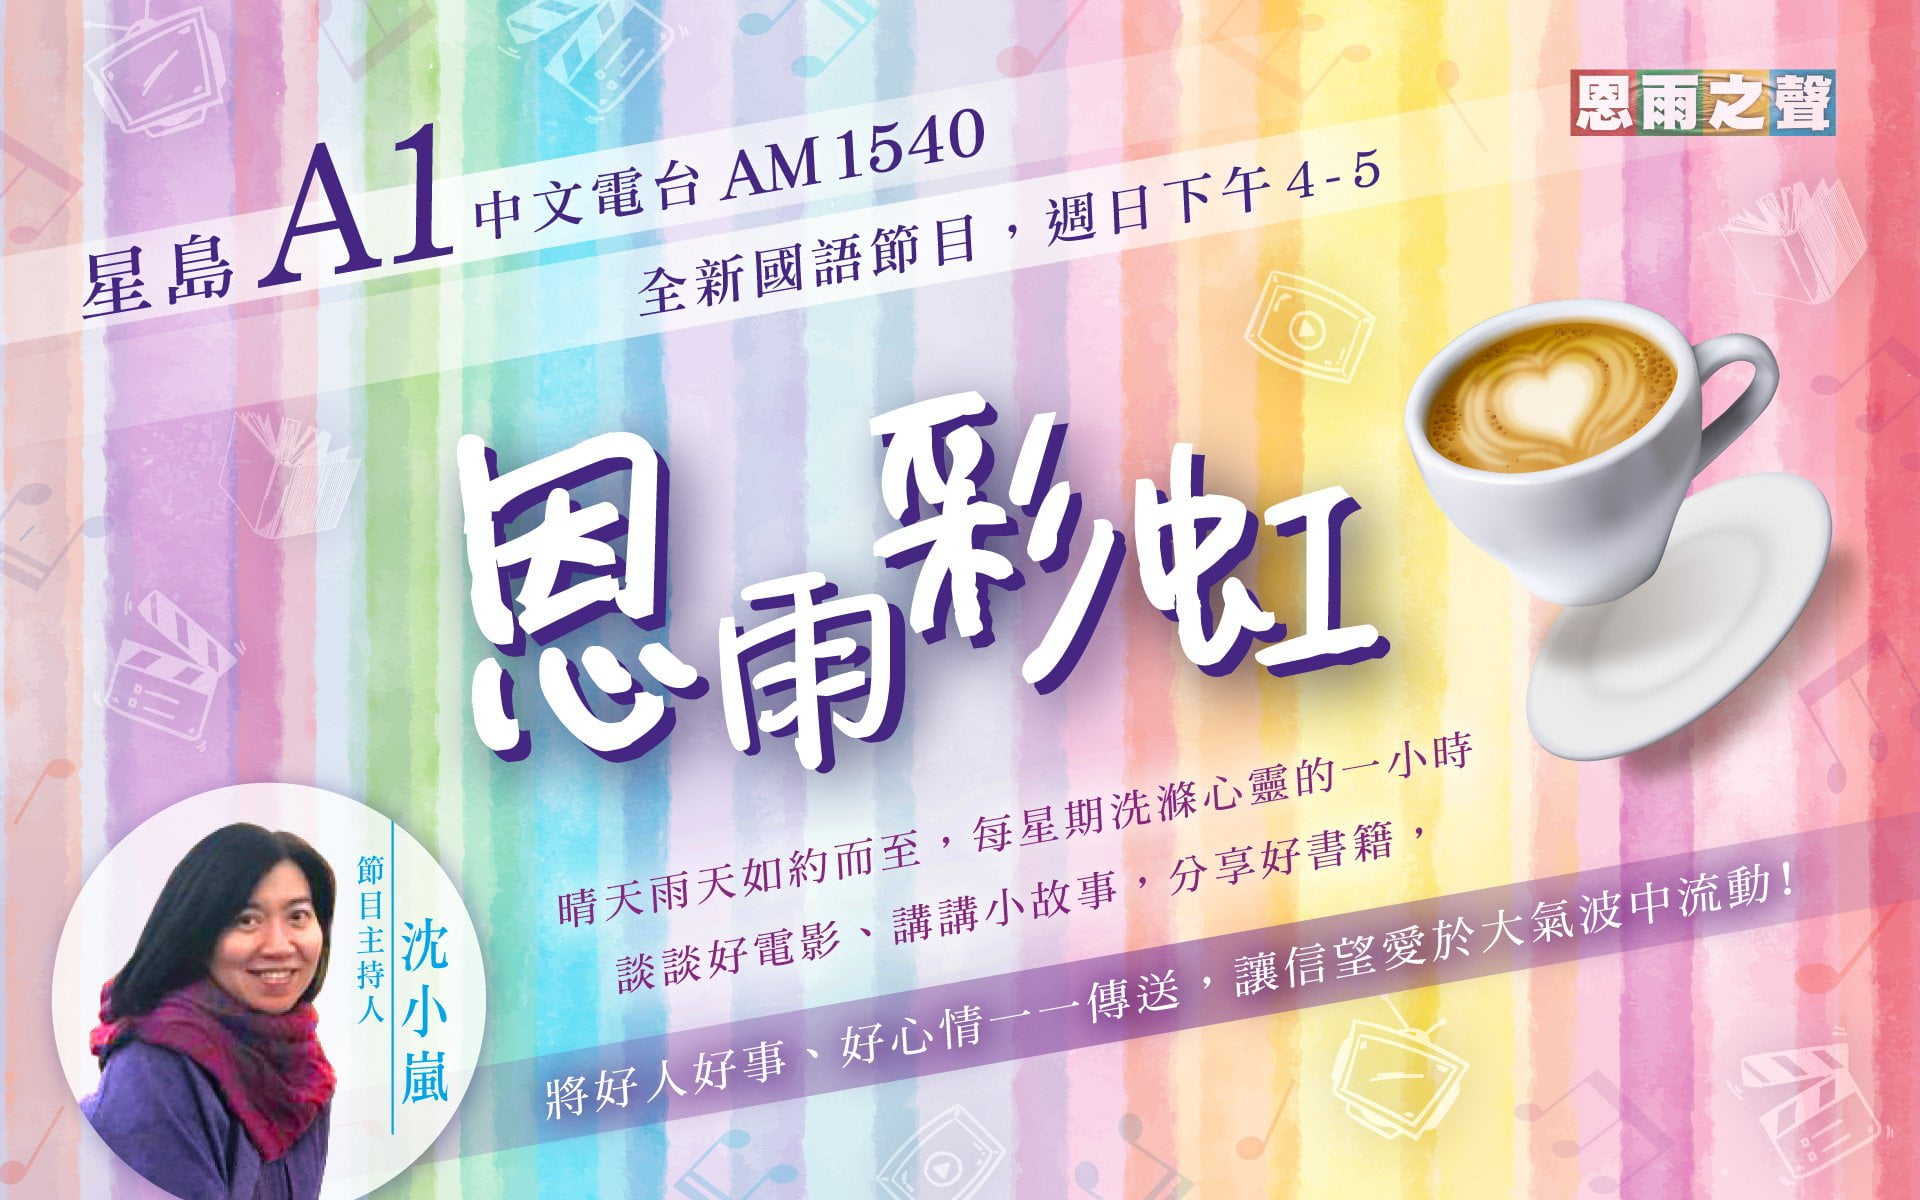 星島A1中文電台 全新國語節目﹕恩雨彩虹